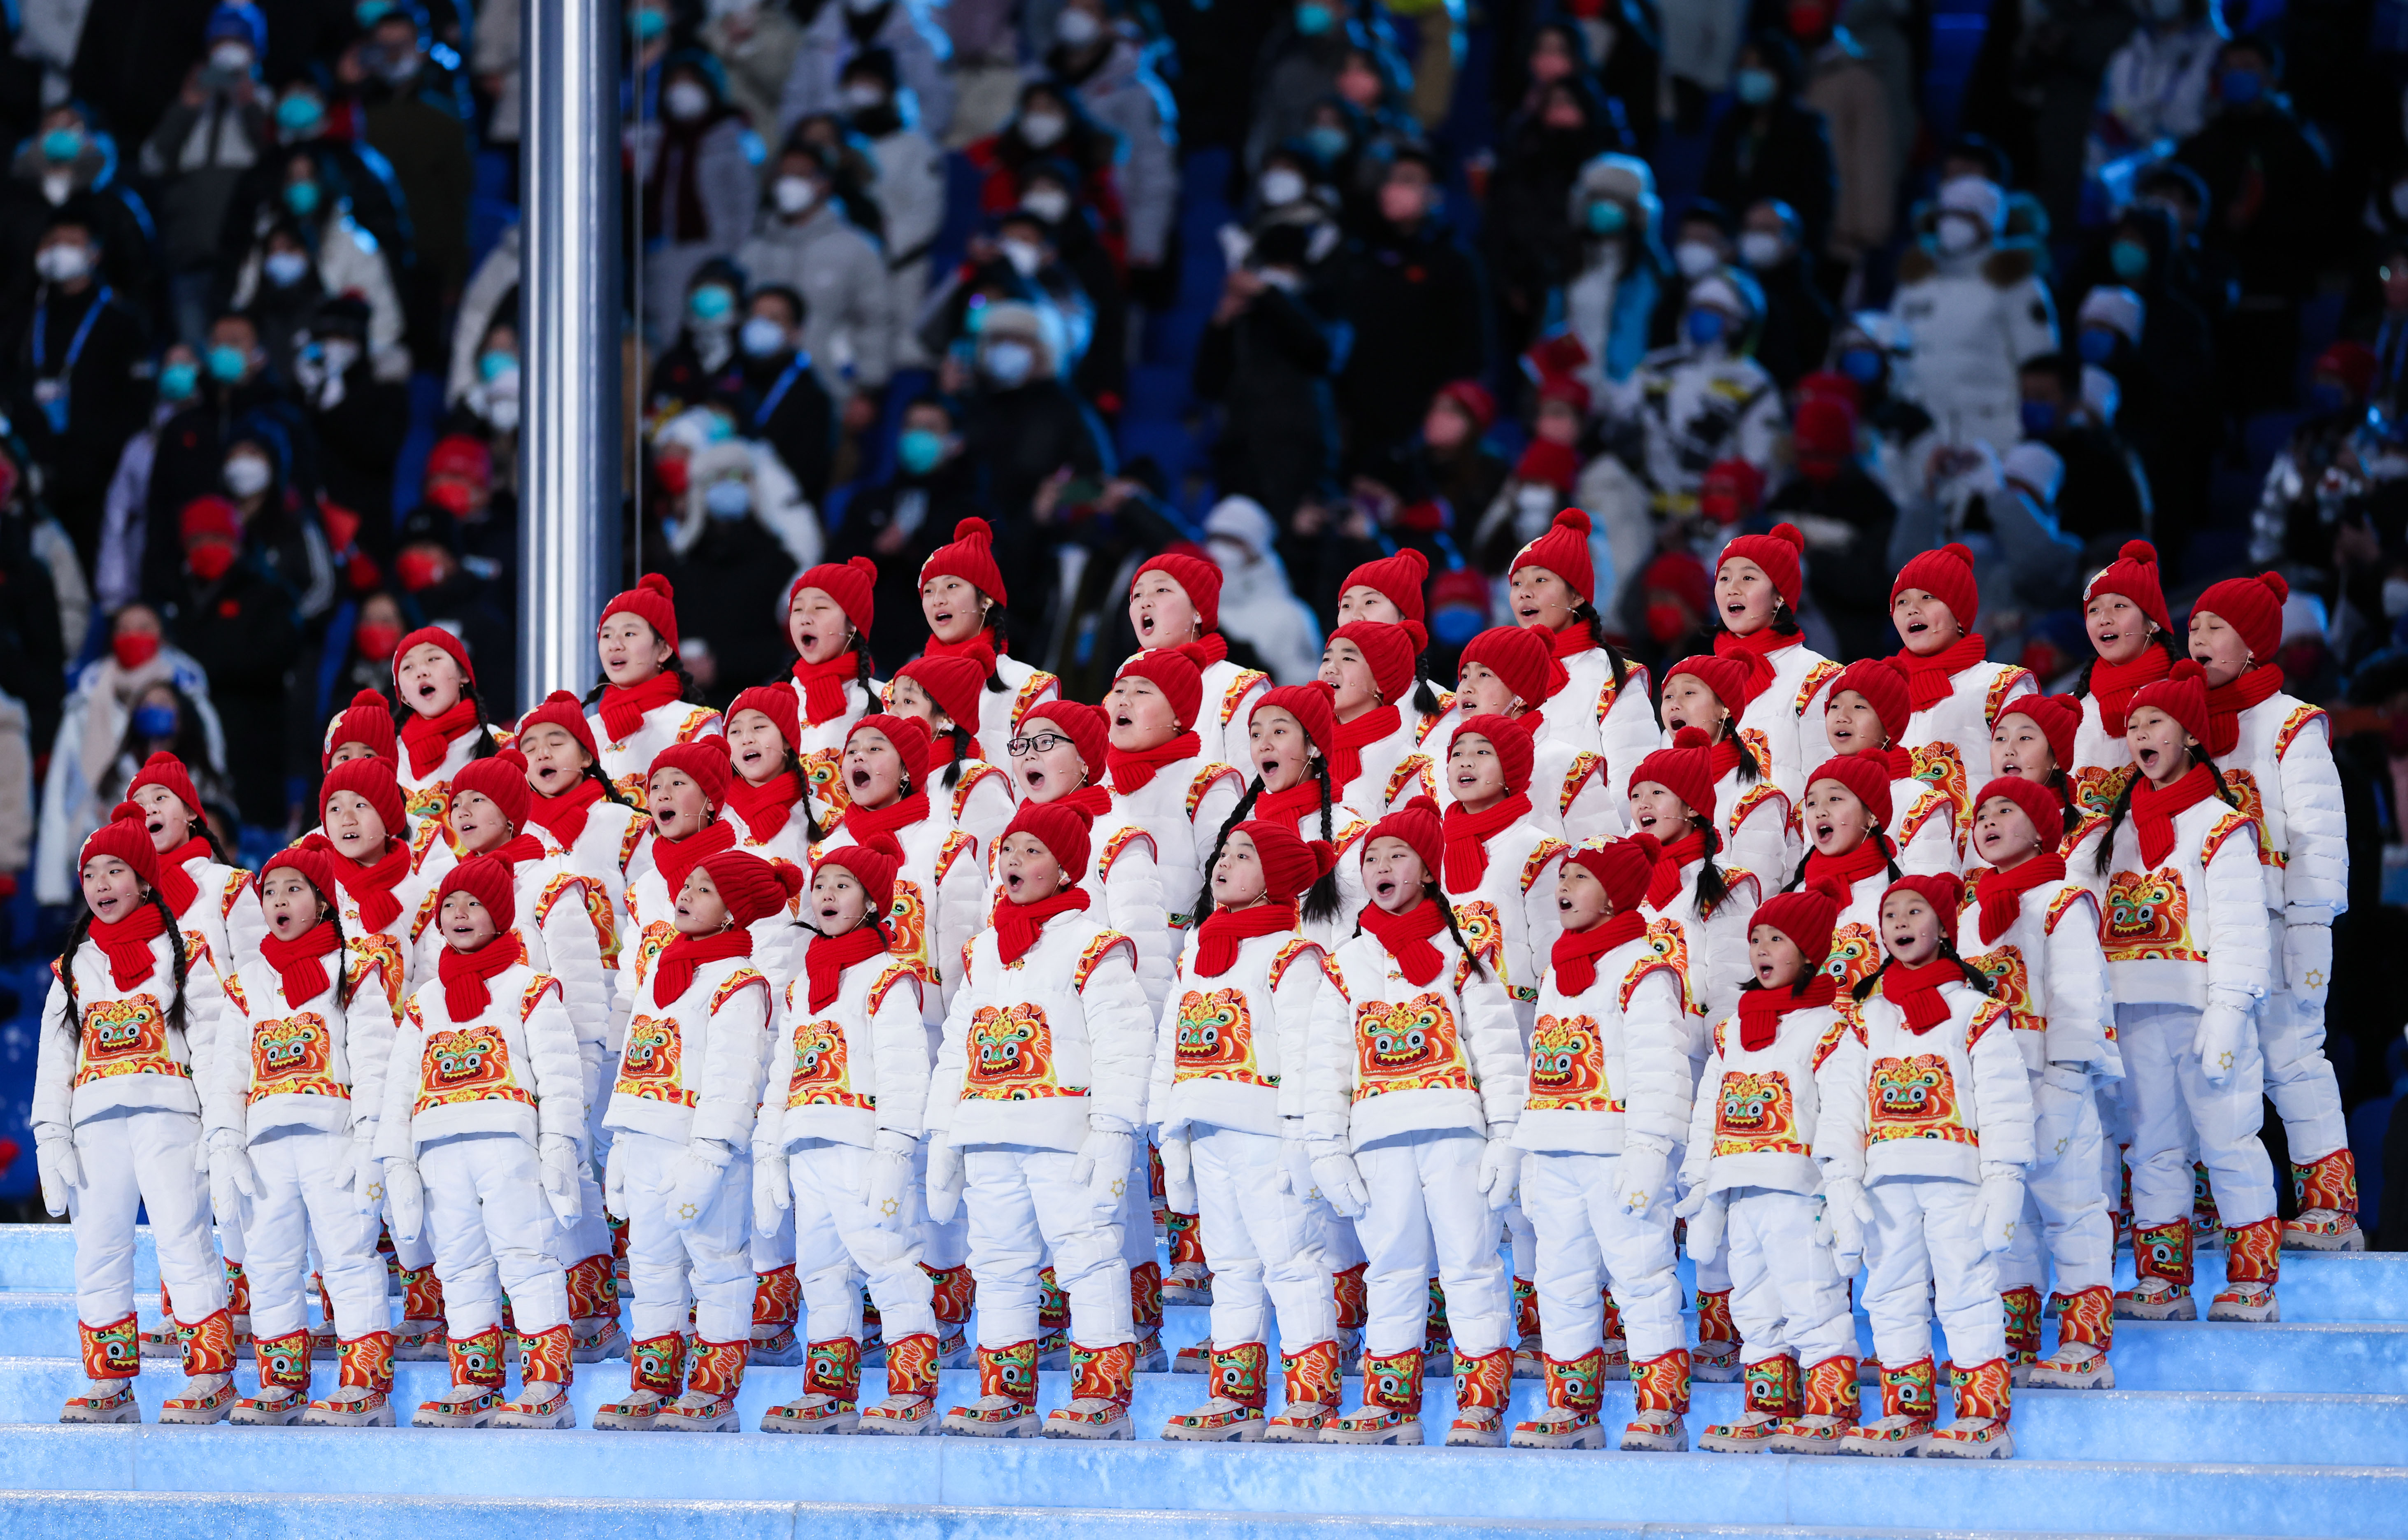 2月4日晚，第二十四届冬季奥林匹克运动会开幕式在北京国家体育场举行。 这是“马兰花儿童合唱团”用希腊语在开幕式上歌唱。新华社记者 曹灿 摄.JPG